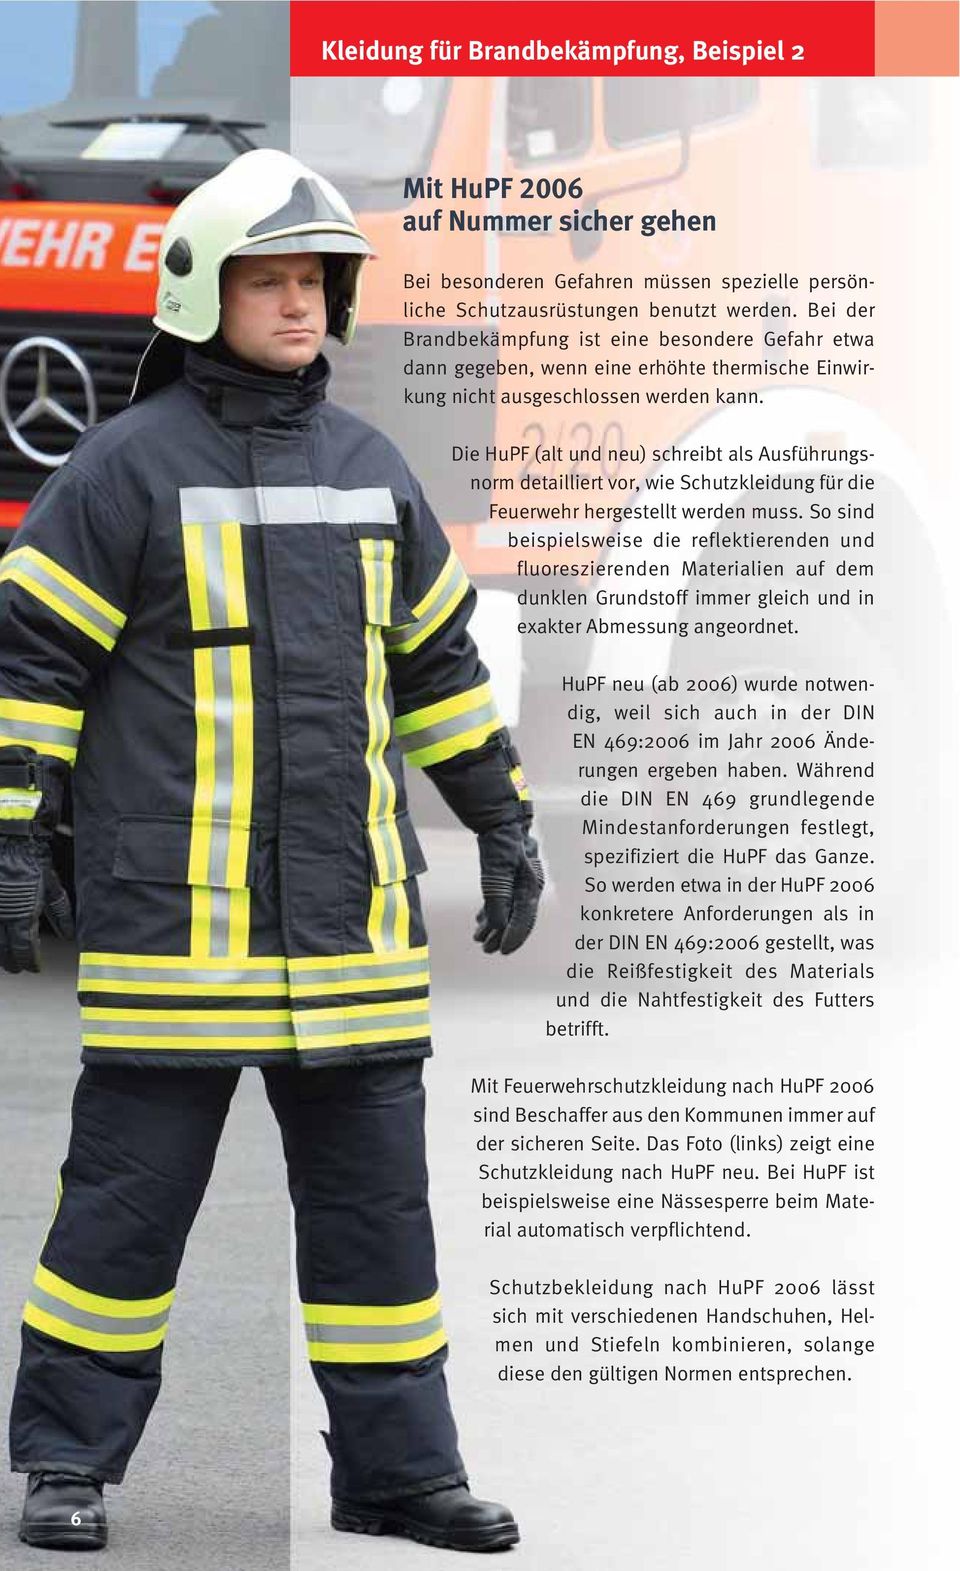 Die HuPF (alt und neu) schreibt als Ausführungsnorm detailliert vor, wie Schutzkleidung für die Feuerwehr hergestellt werden muss.